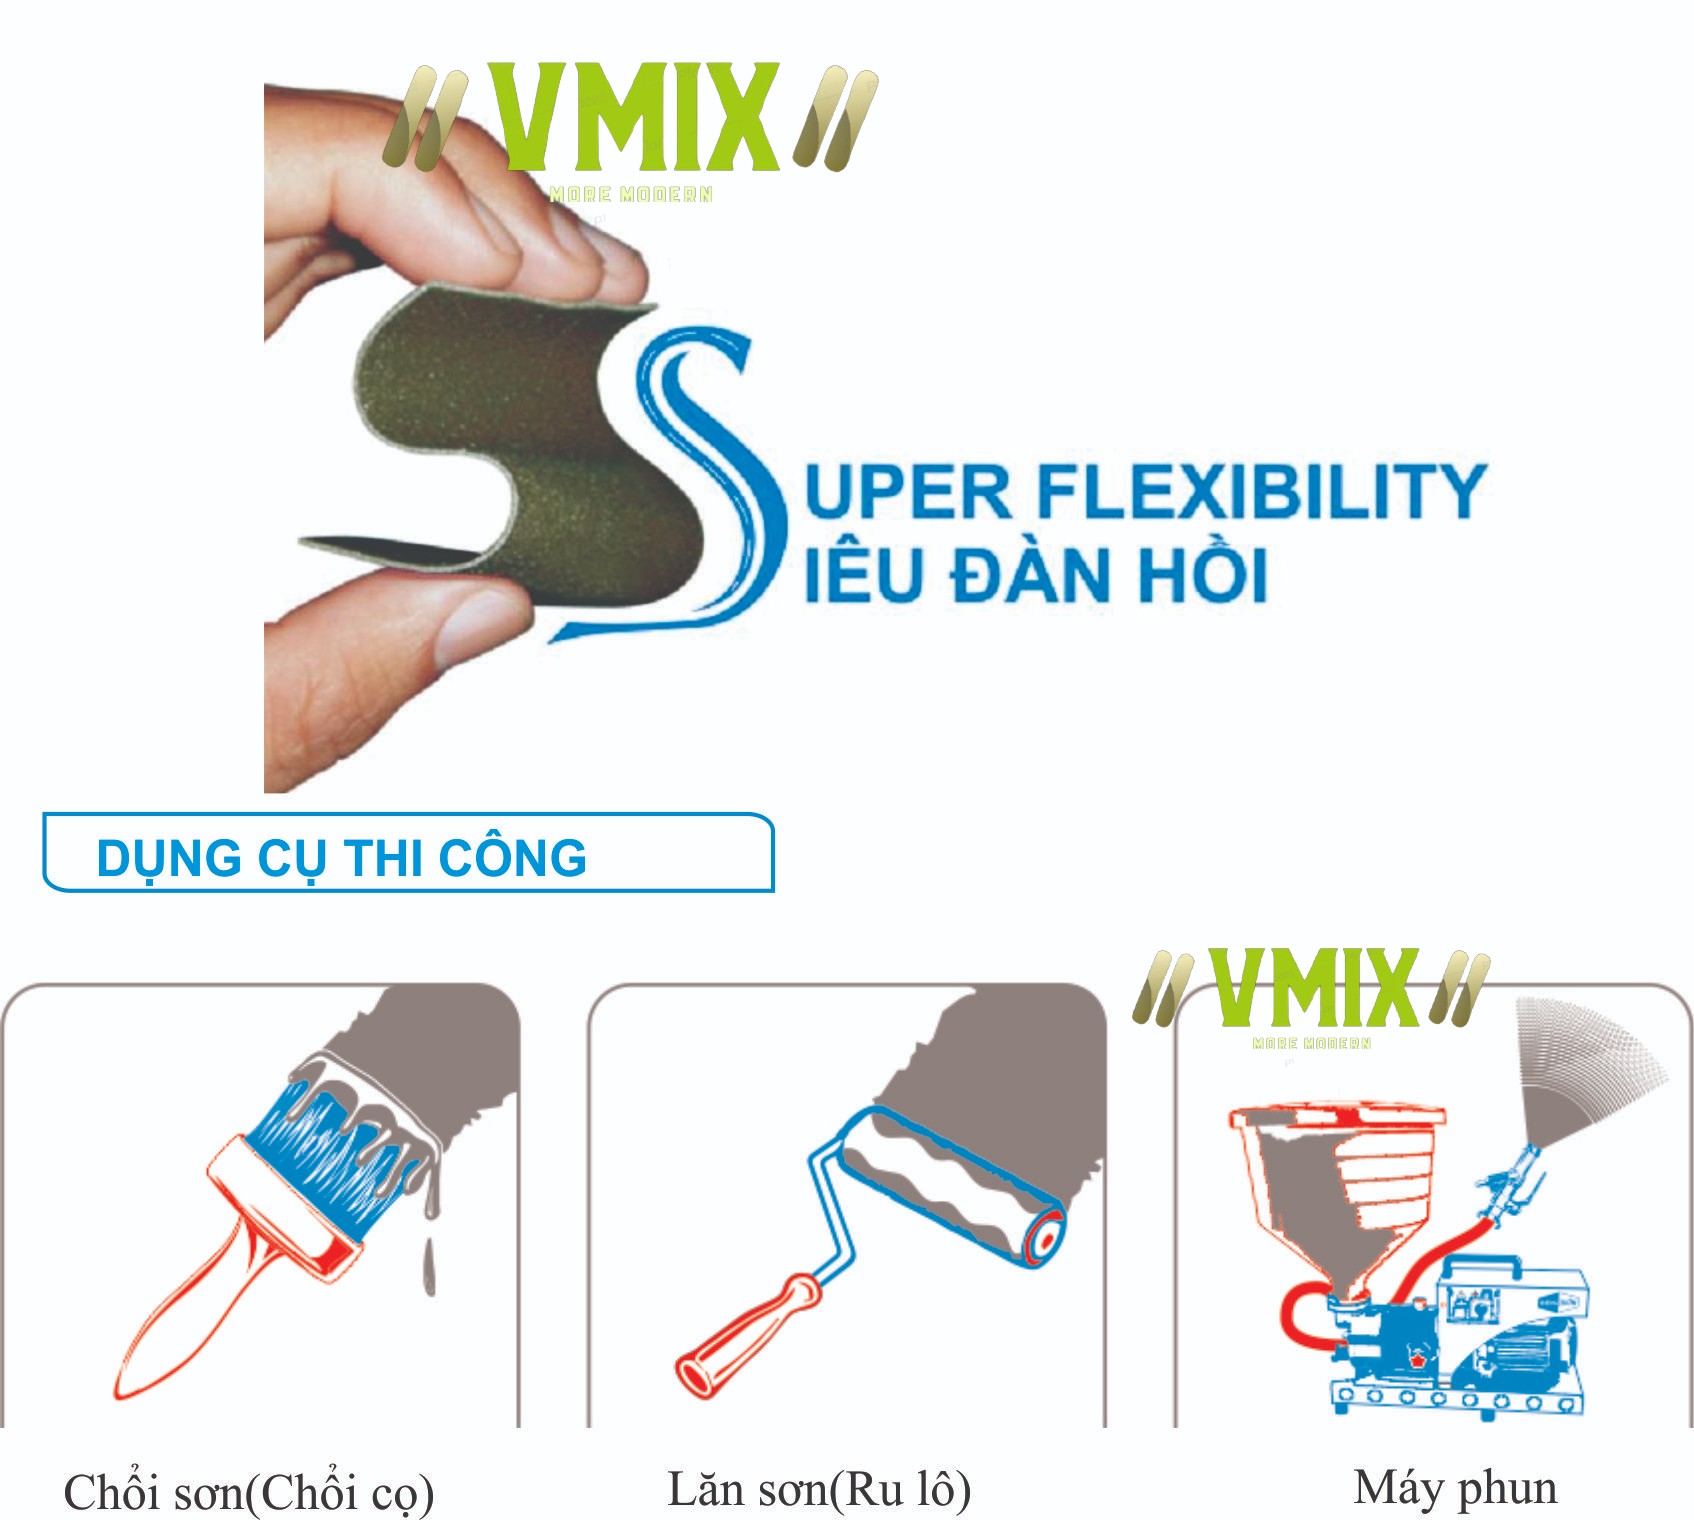 [20kg] Chống thấm xi măng 2 thành phần đàn hồi Smartflex chống thấm cho tầng mái, ban công,vệ sinh,hồ bơi,tầng hầm , bể nước.Chống thấm Vmix